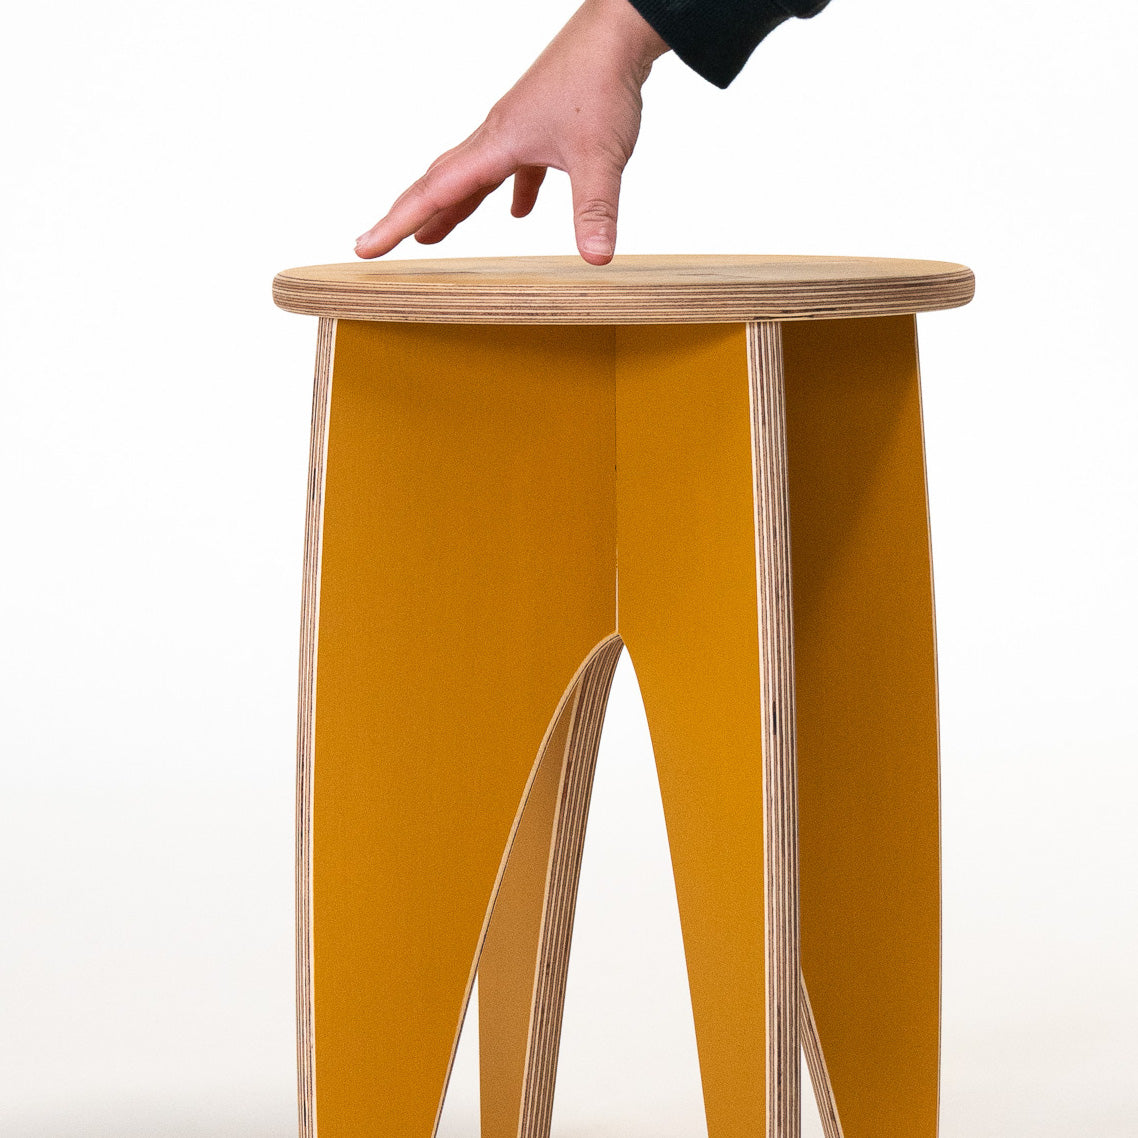 SIMPLE • 2 stools • FRUIT PUNCH Bundle